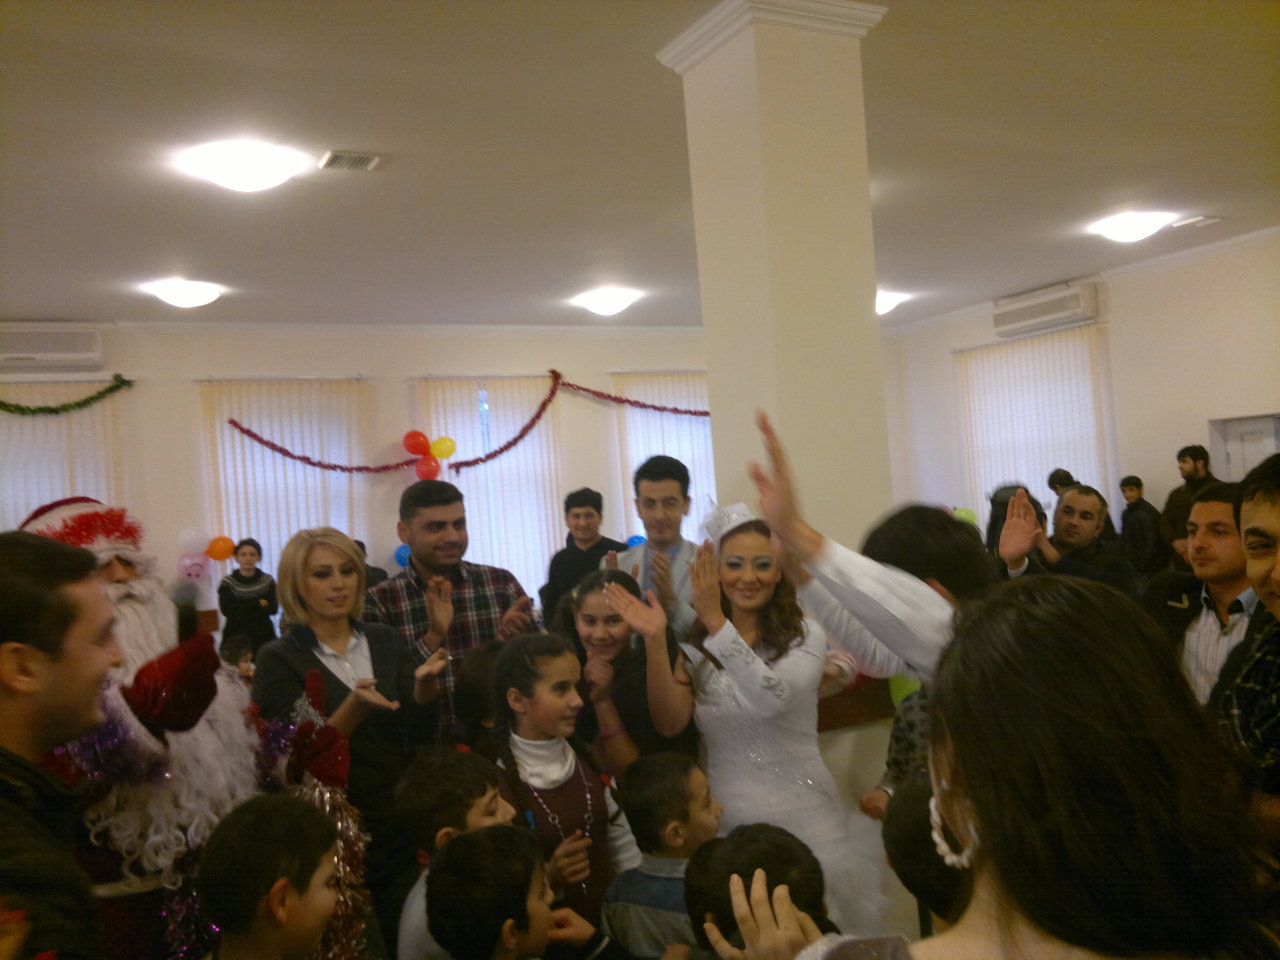 В Баку дети показали свой талант поэтов эстрадным исполнителям (фото)